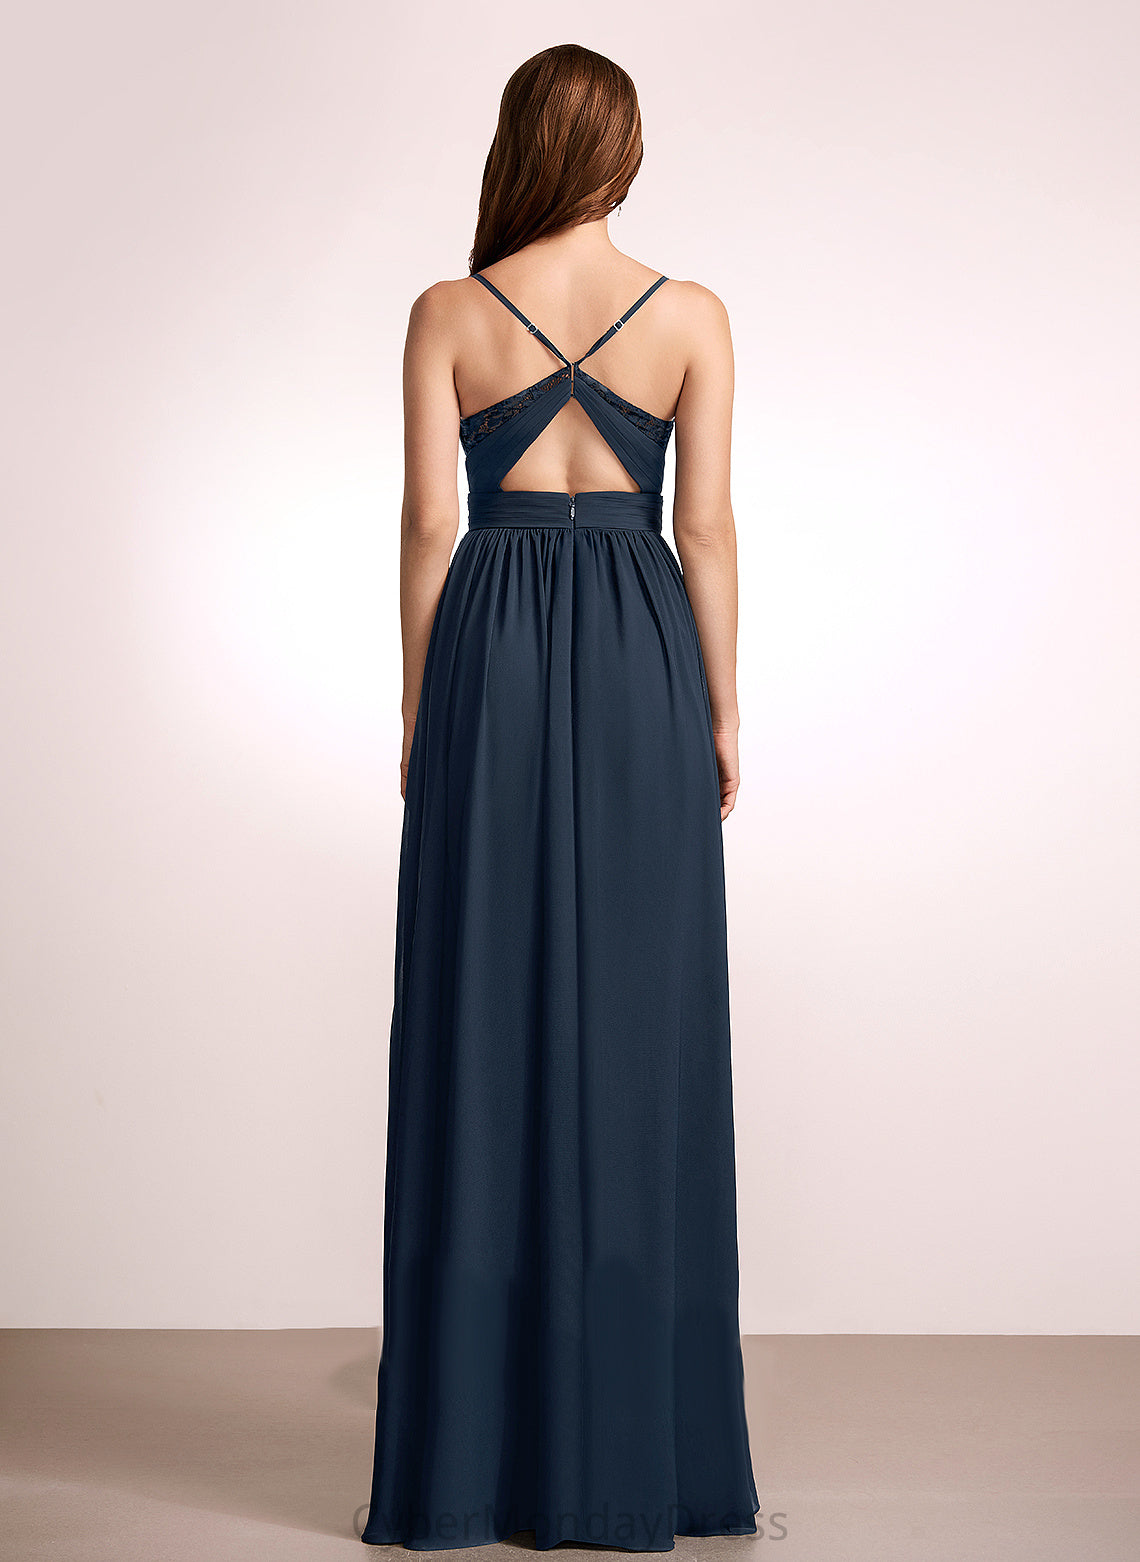 Lace V-neck Neckline Silhouette Fabric Length A-Line Floor-Length Embellishment Carla V-Neck Natural Waist Bridesmaid Dresses